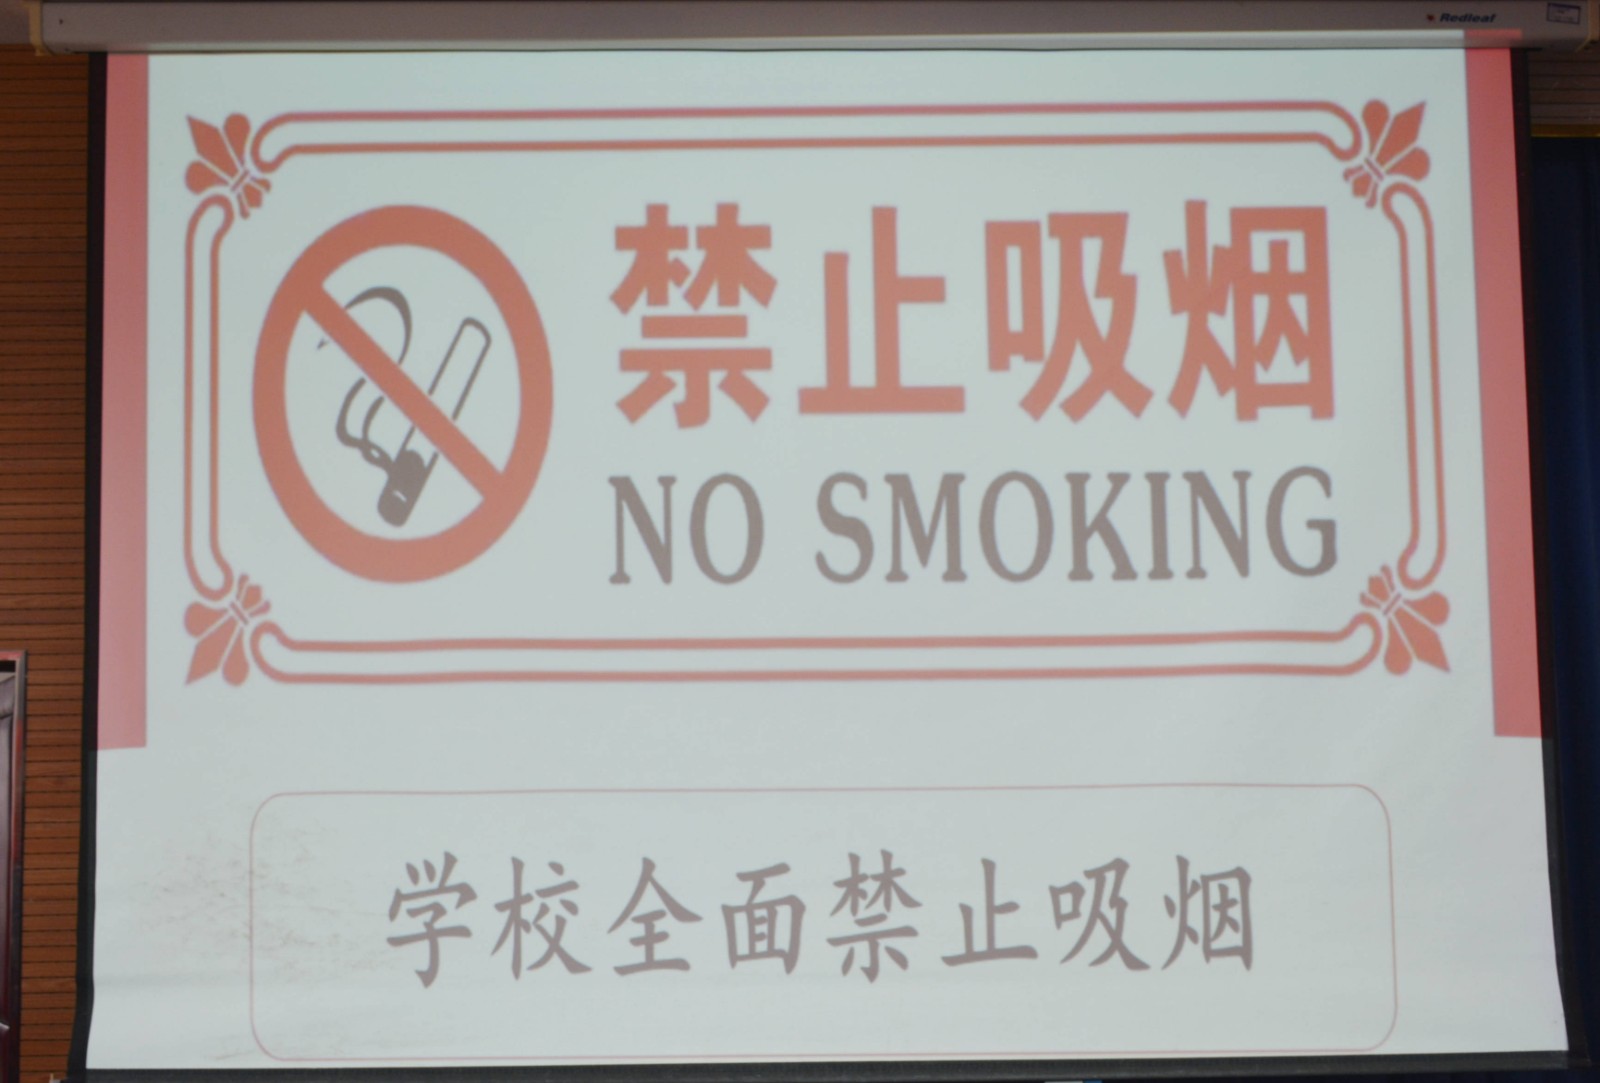 远离烟草 邯郸北方无烟校园